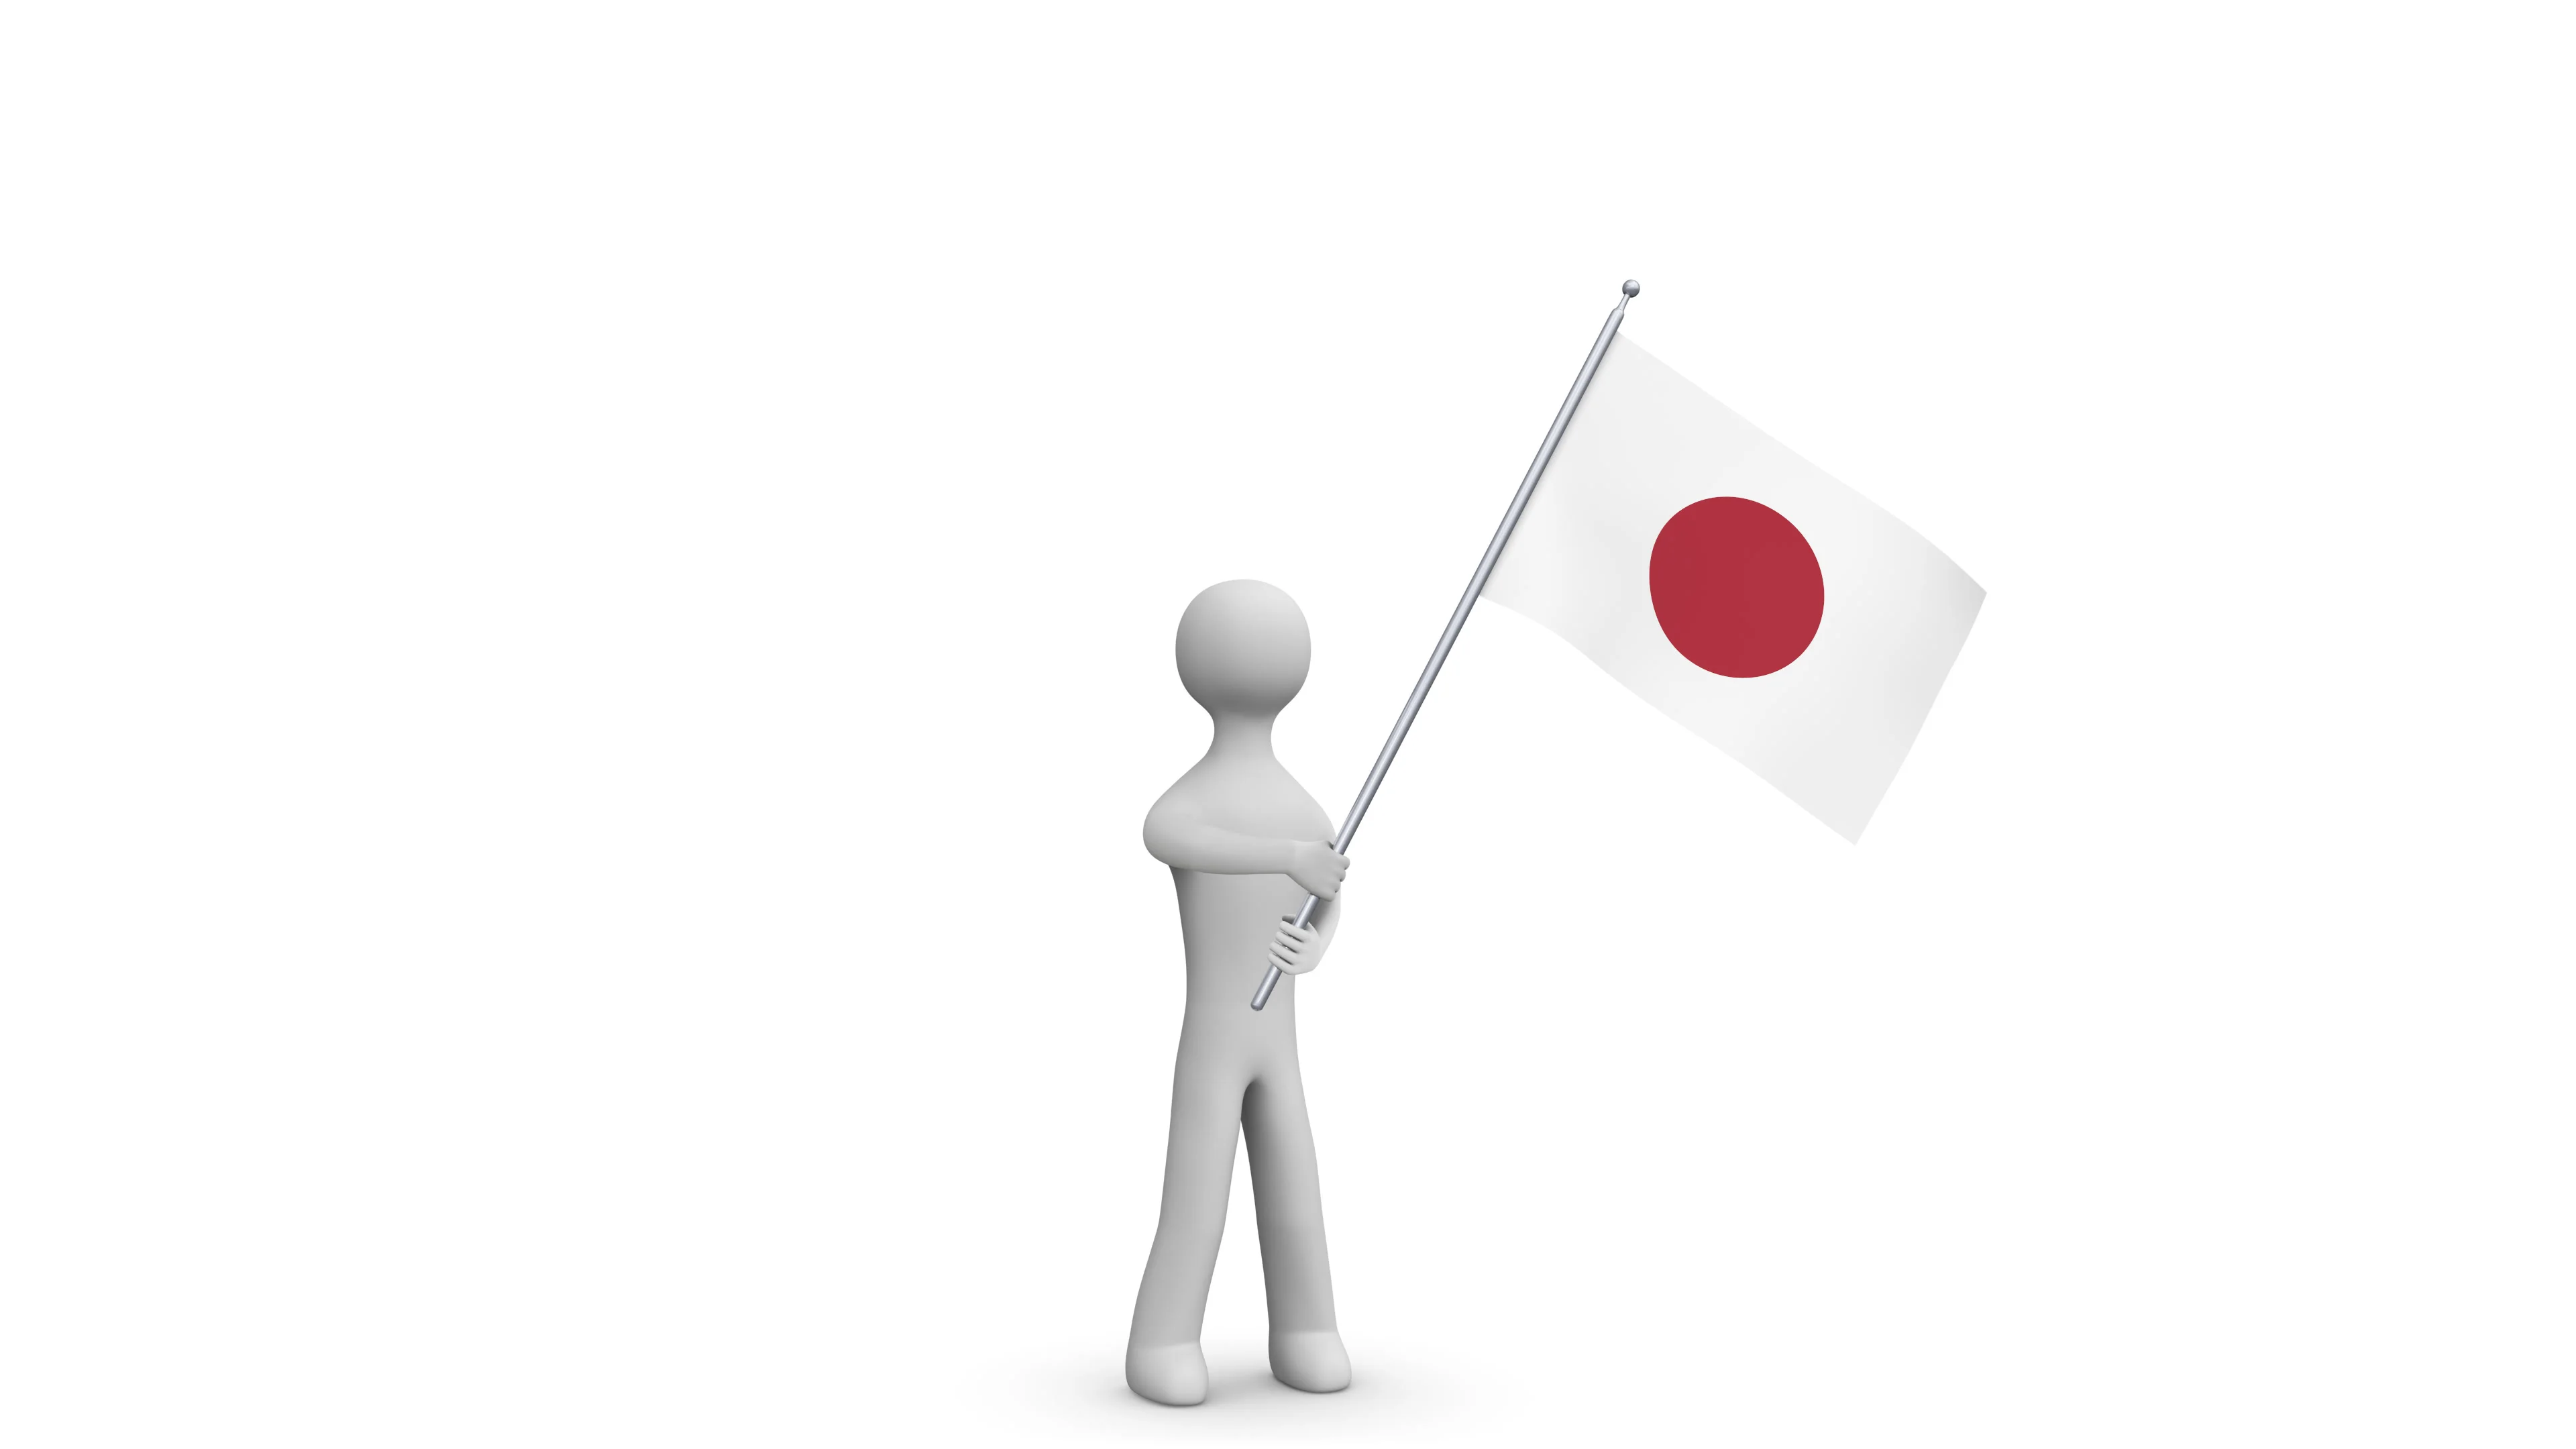 japanese flag waving